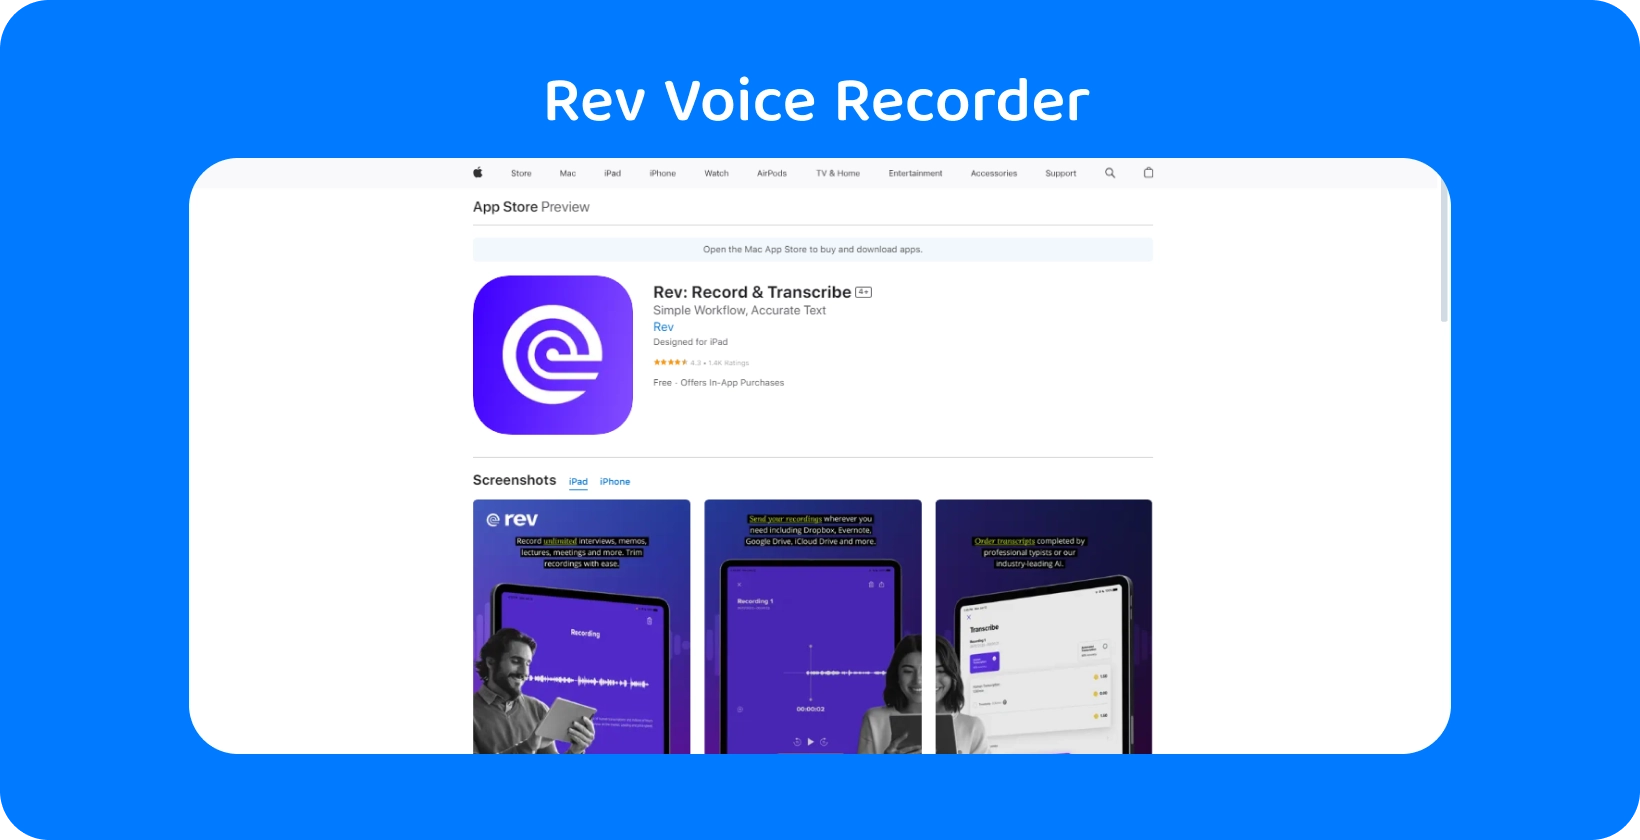 Aplikacja Rev Voice Recorder w Apple App Store, podkreślająca jej elegancki wygląd i funkcje transkrypcji.